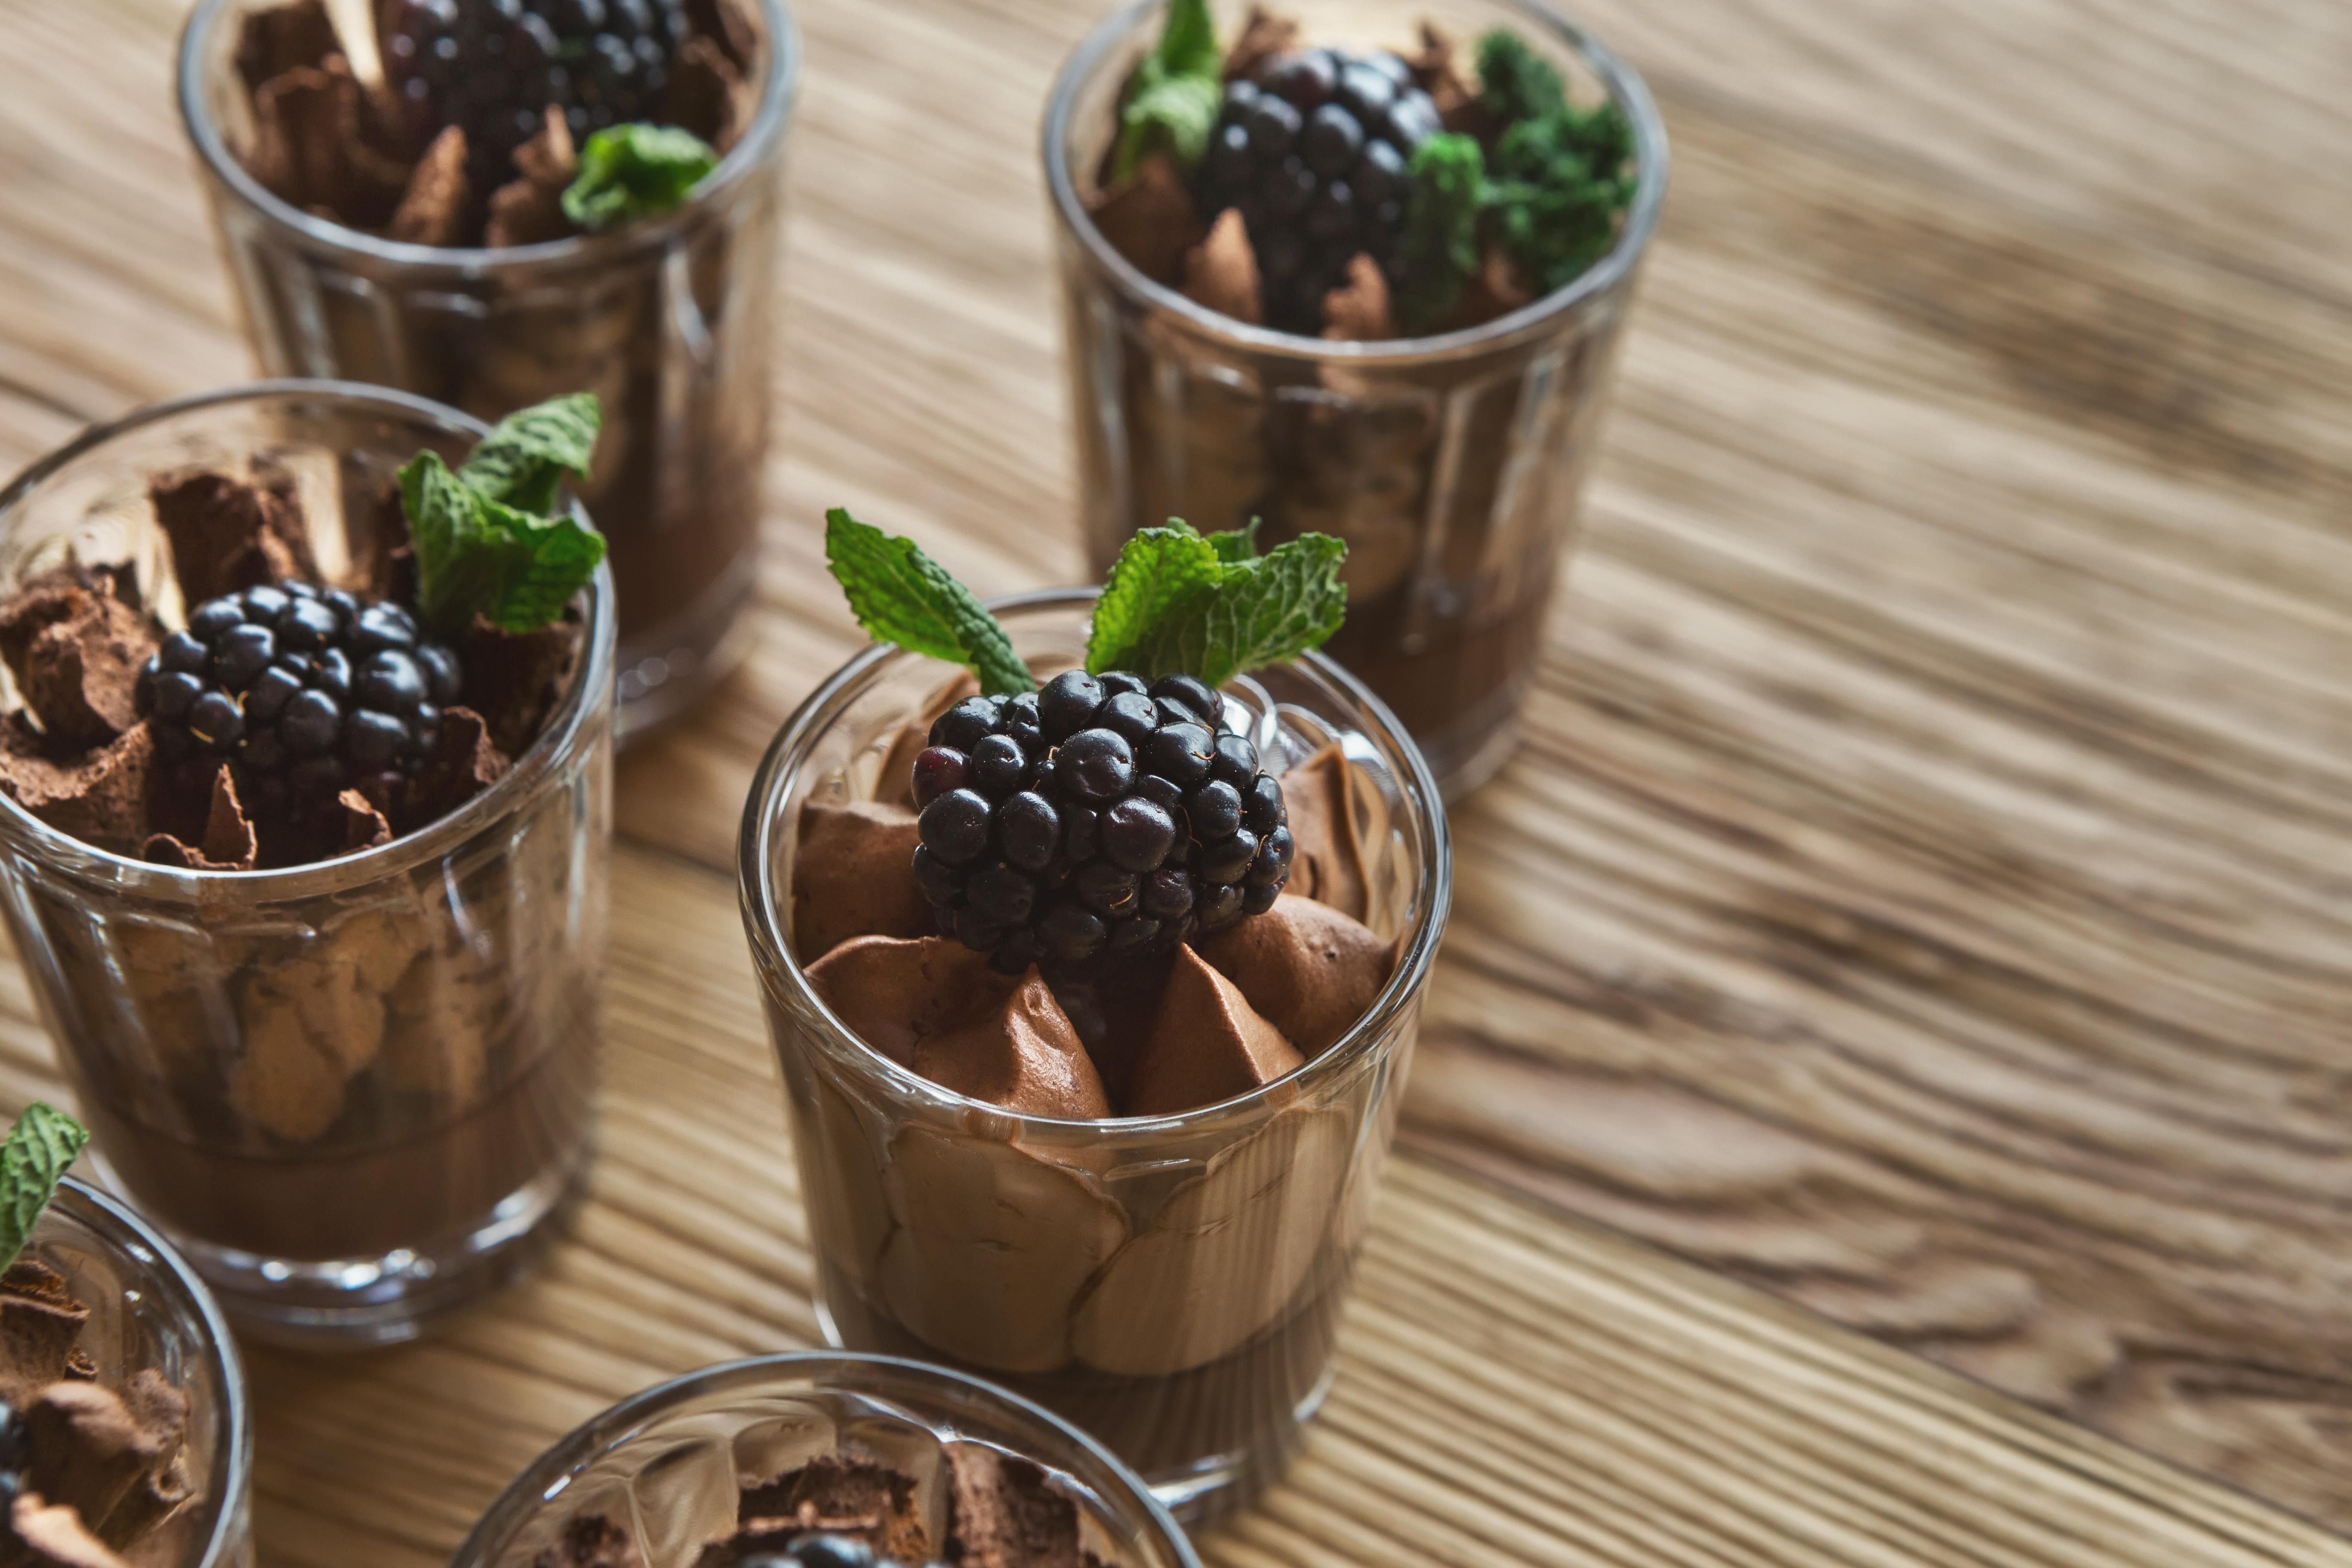 Seks glass med sjokolademousse på rekke. Pyntet med bjørnebær og mynteblader. 